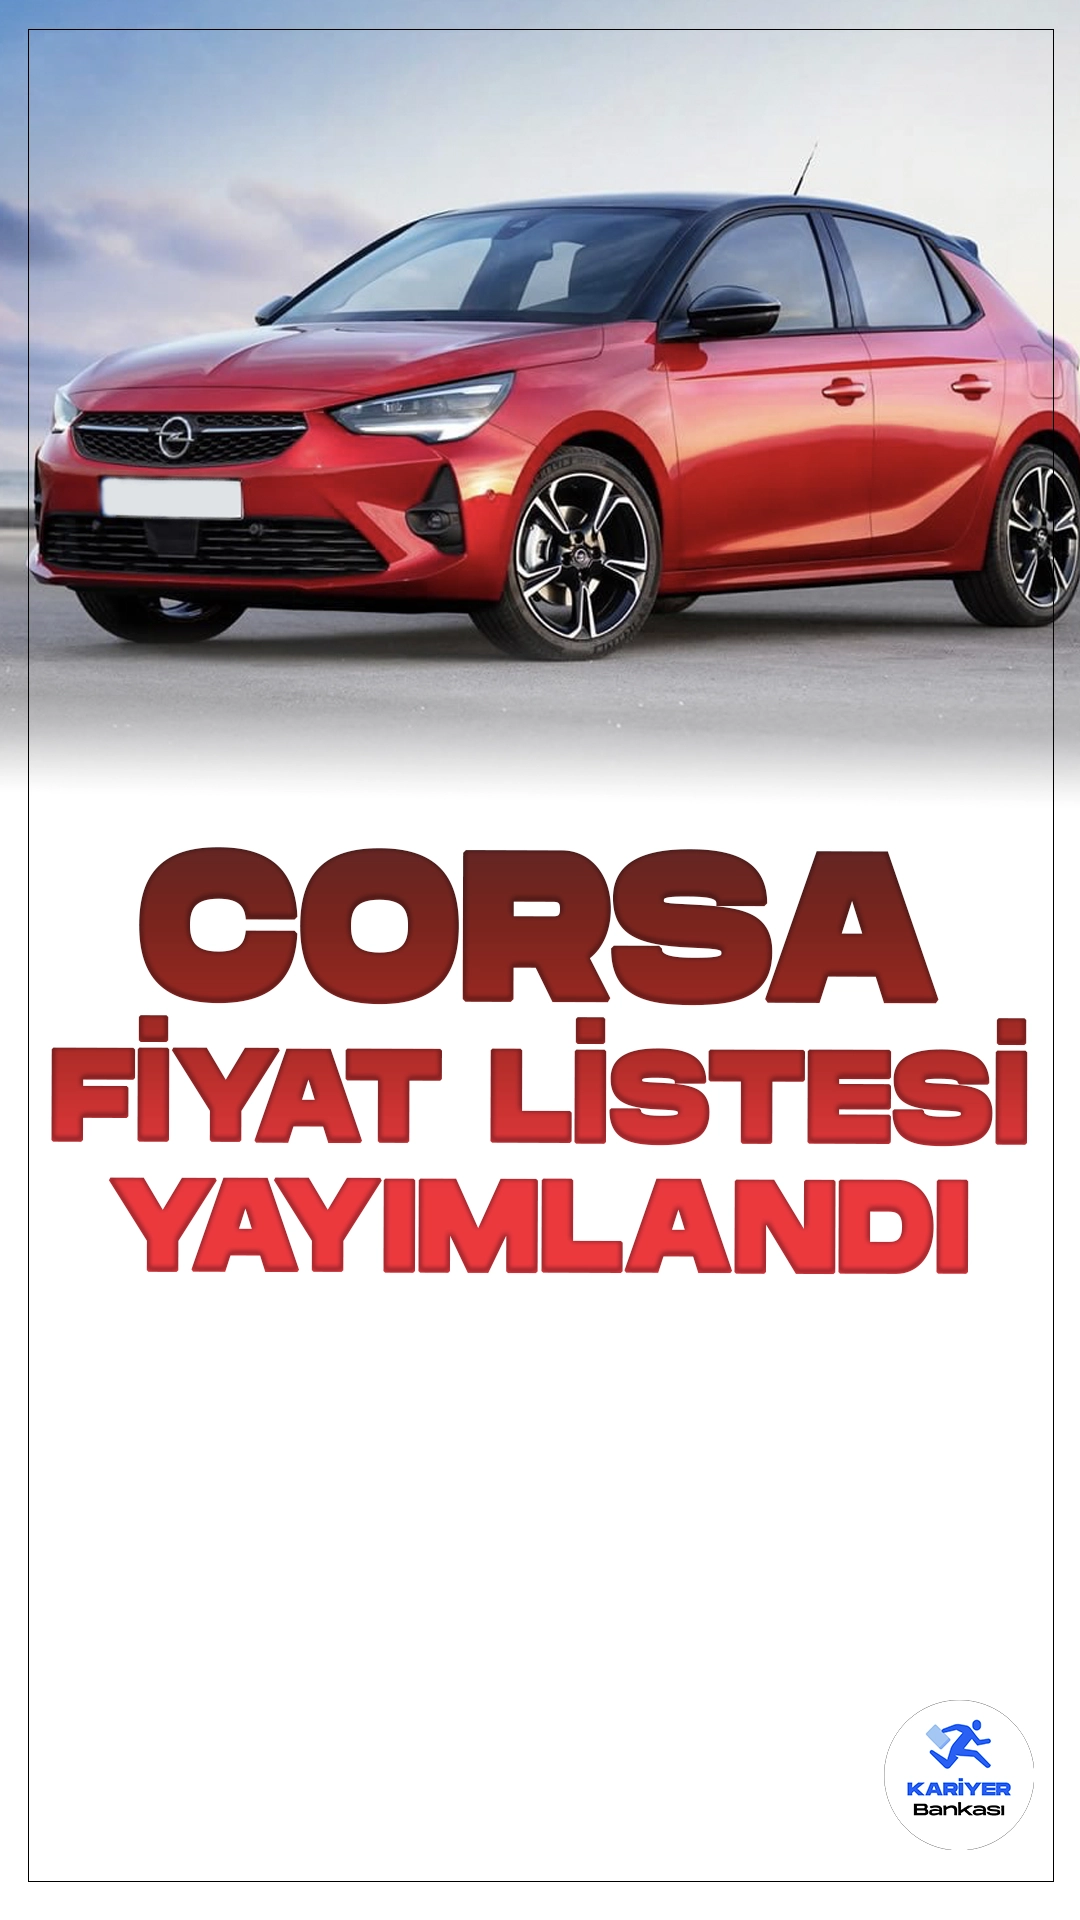 Opel Corsa Temmuz 2024 Fiyat Listesi Yayımlandı.Opel Corsa, yenilikçi tasarımı ve üstün performans özellikleriyle dikkat çekmeye devam ediyor. Şehir içi kullanımda sunduğu konfor ve pratiklik sayesinde kullanıcılar tarafından tercih edilen bu model, aynı zamanda ekonomik yakıt tüketimiyle de öne çıkıyor.